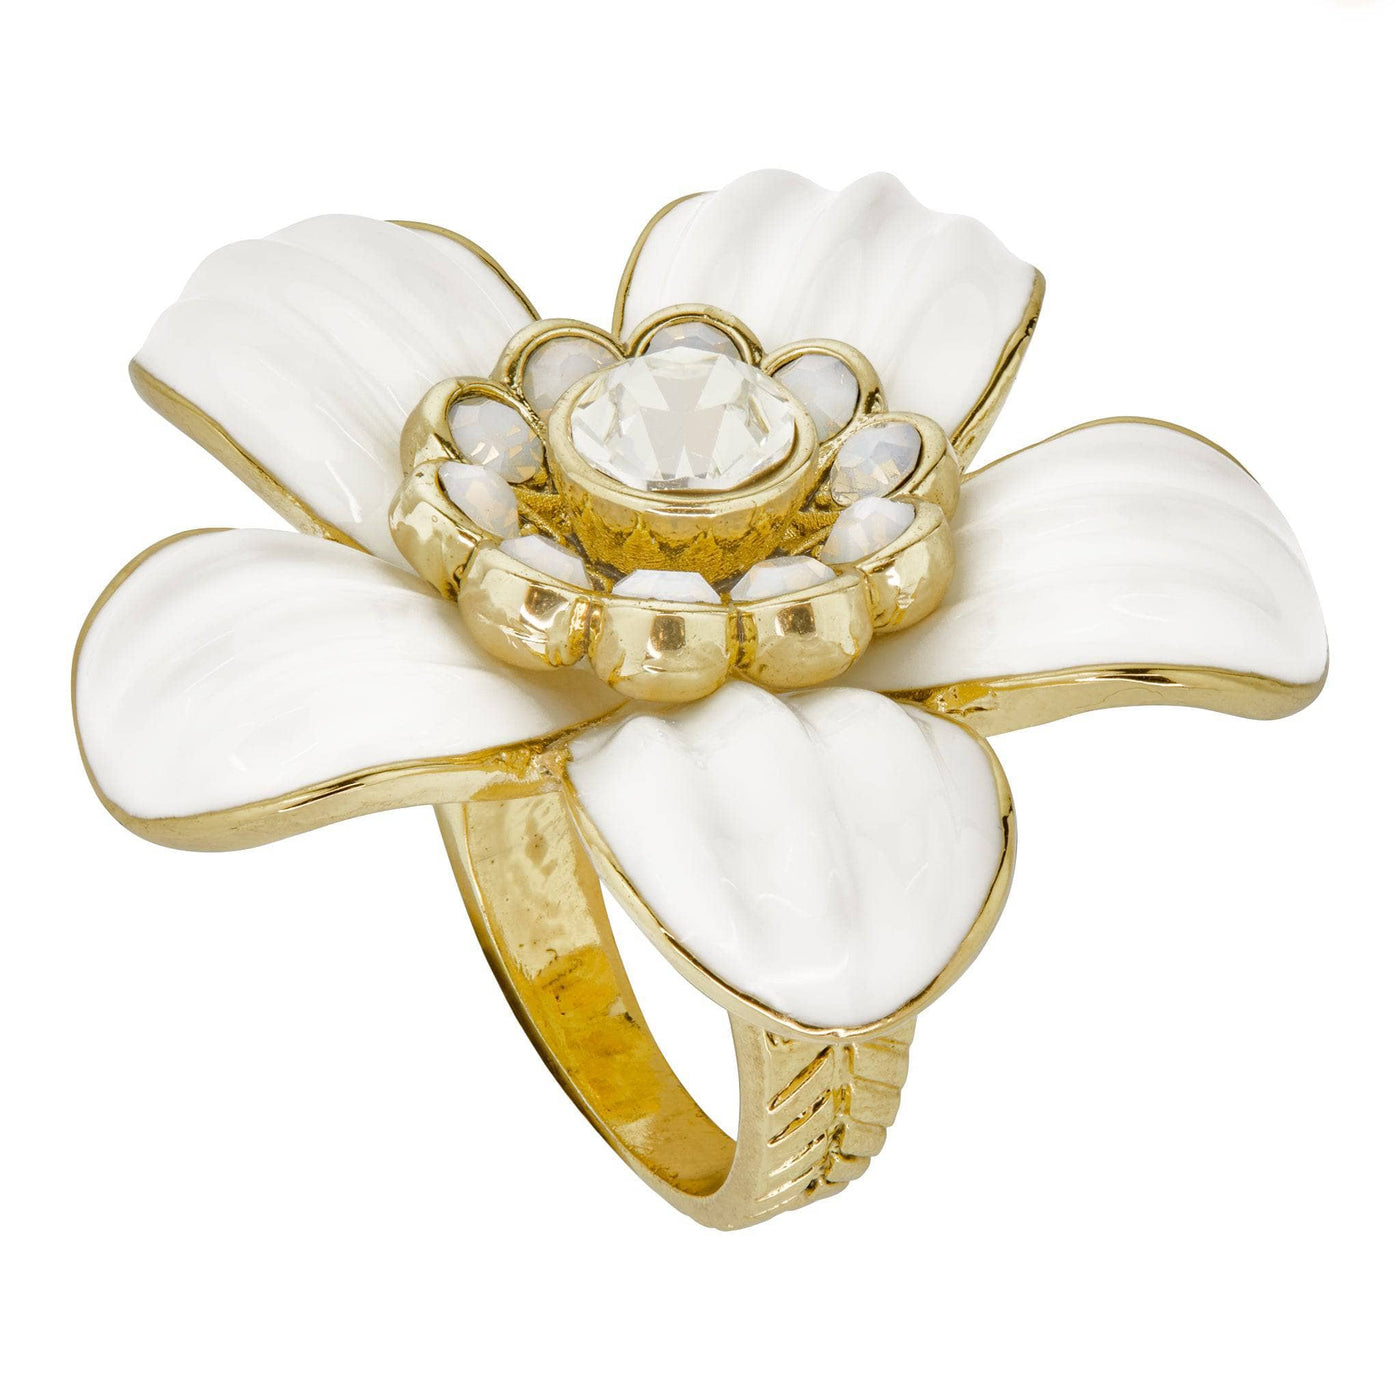 HEIDI DAUS®"Flower Super Power" Crystal & Enamel Floral Ring